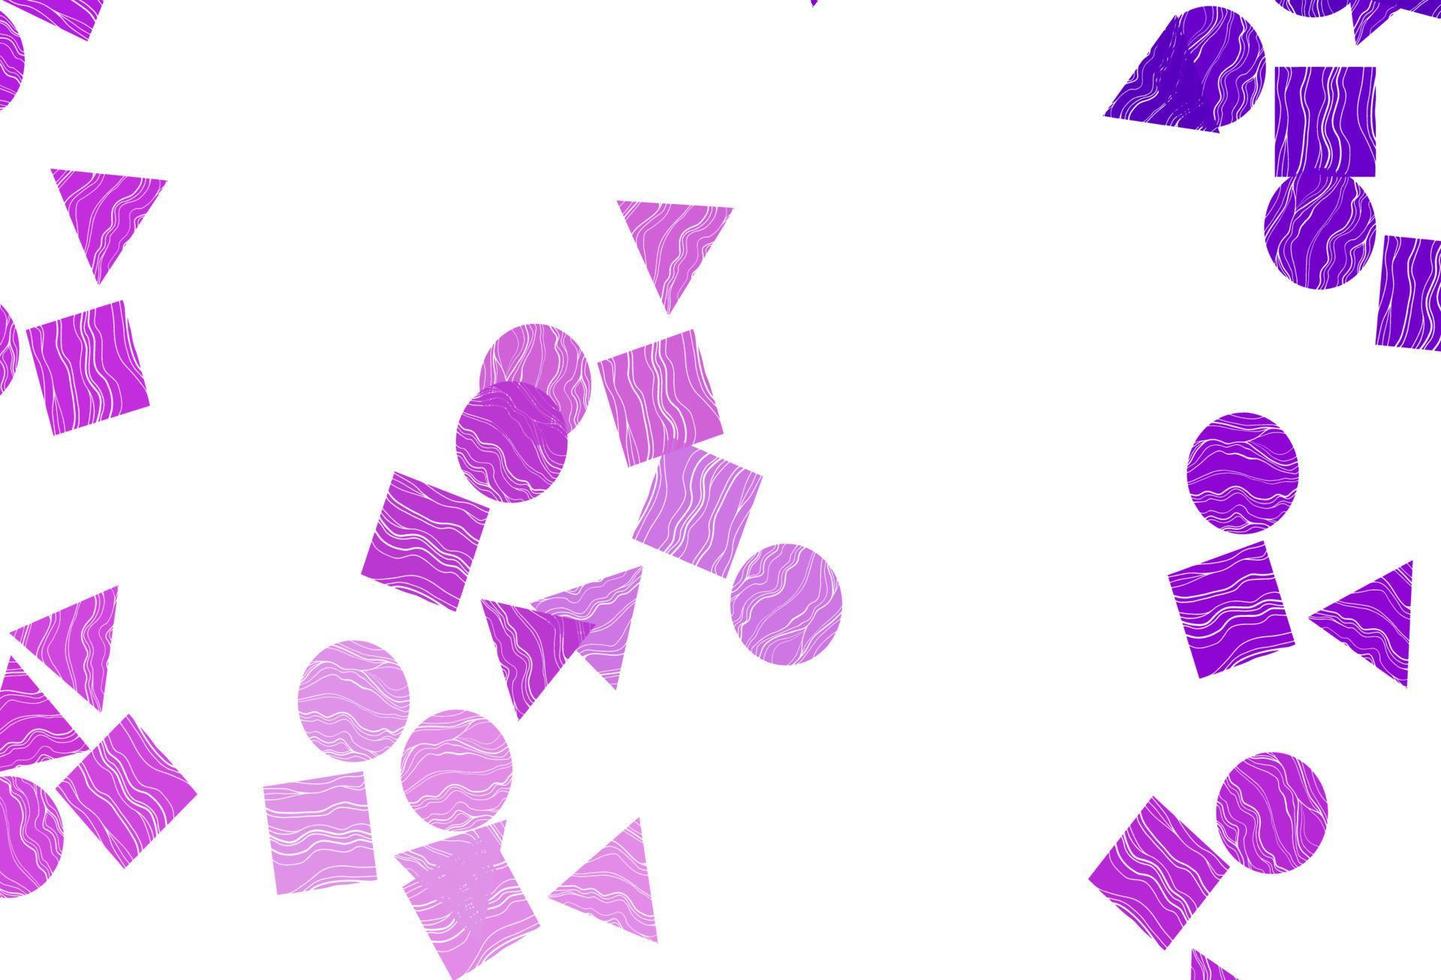 couverture vectorielle violet clair dans un style polygonal avec des cercles. vecteur